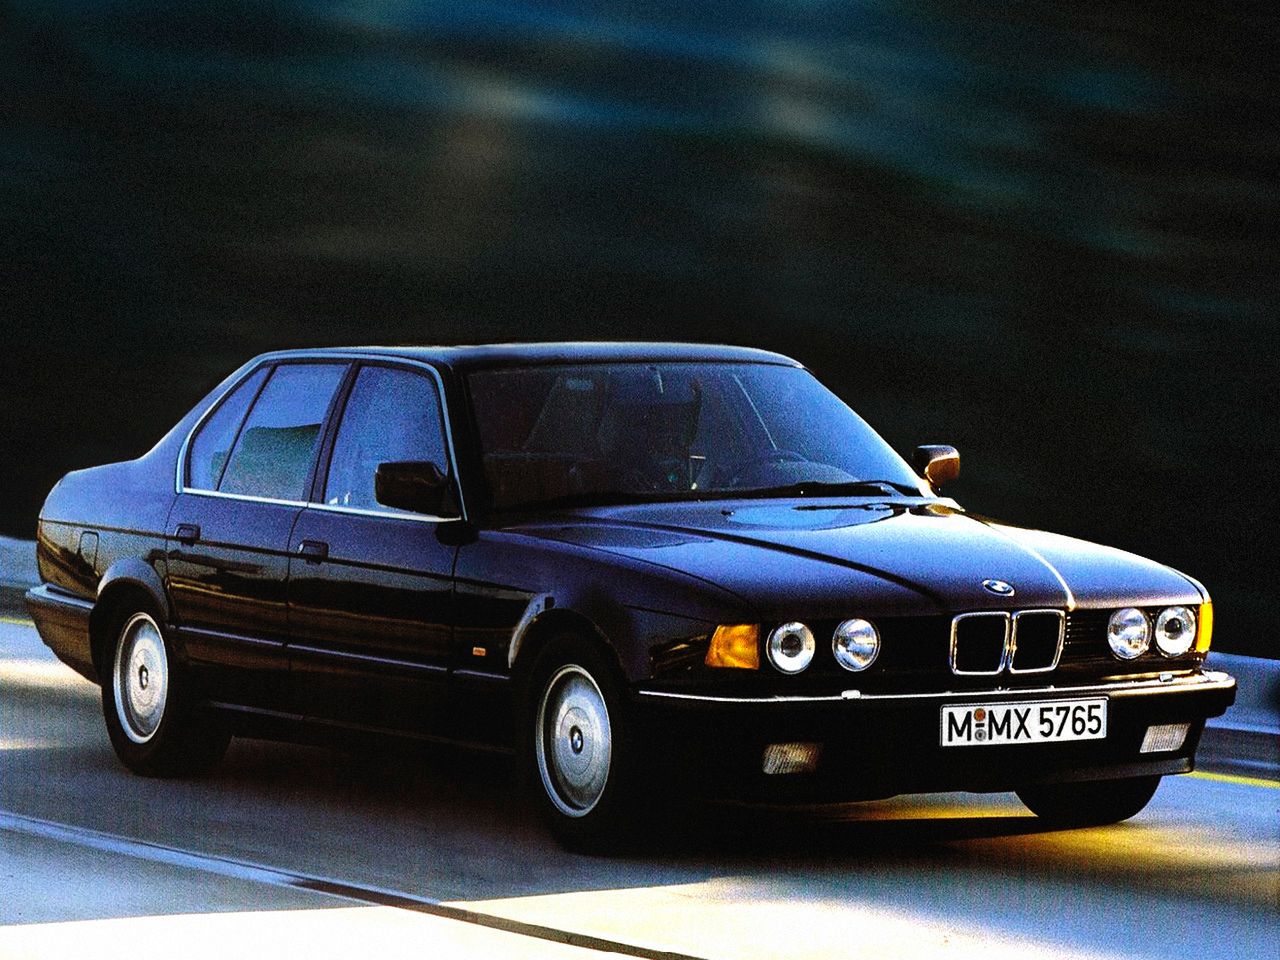 BMW Serii 7 E32, czyli następcę E23 przedstawiono w 1986 roku. Prace nad tym modelem trwały ponad 6 lat.